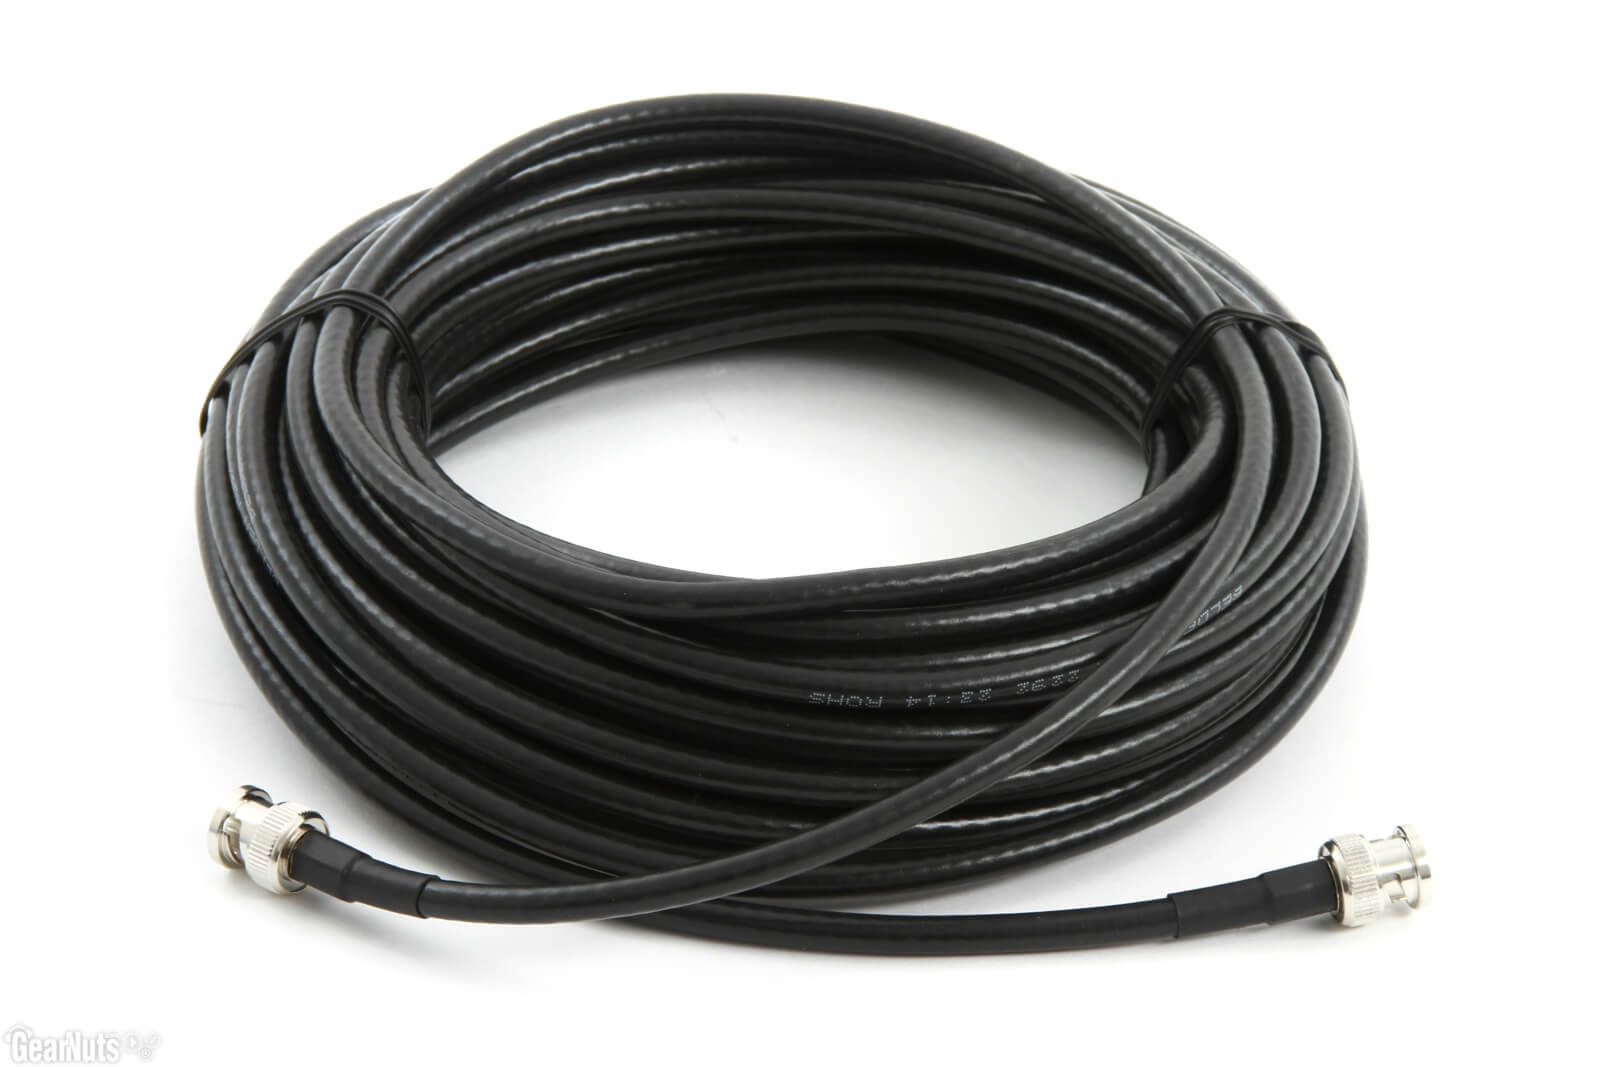 Cable de 15 mts con conectores BNC para antenas y preamplificadores de RF